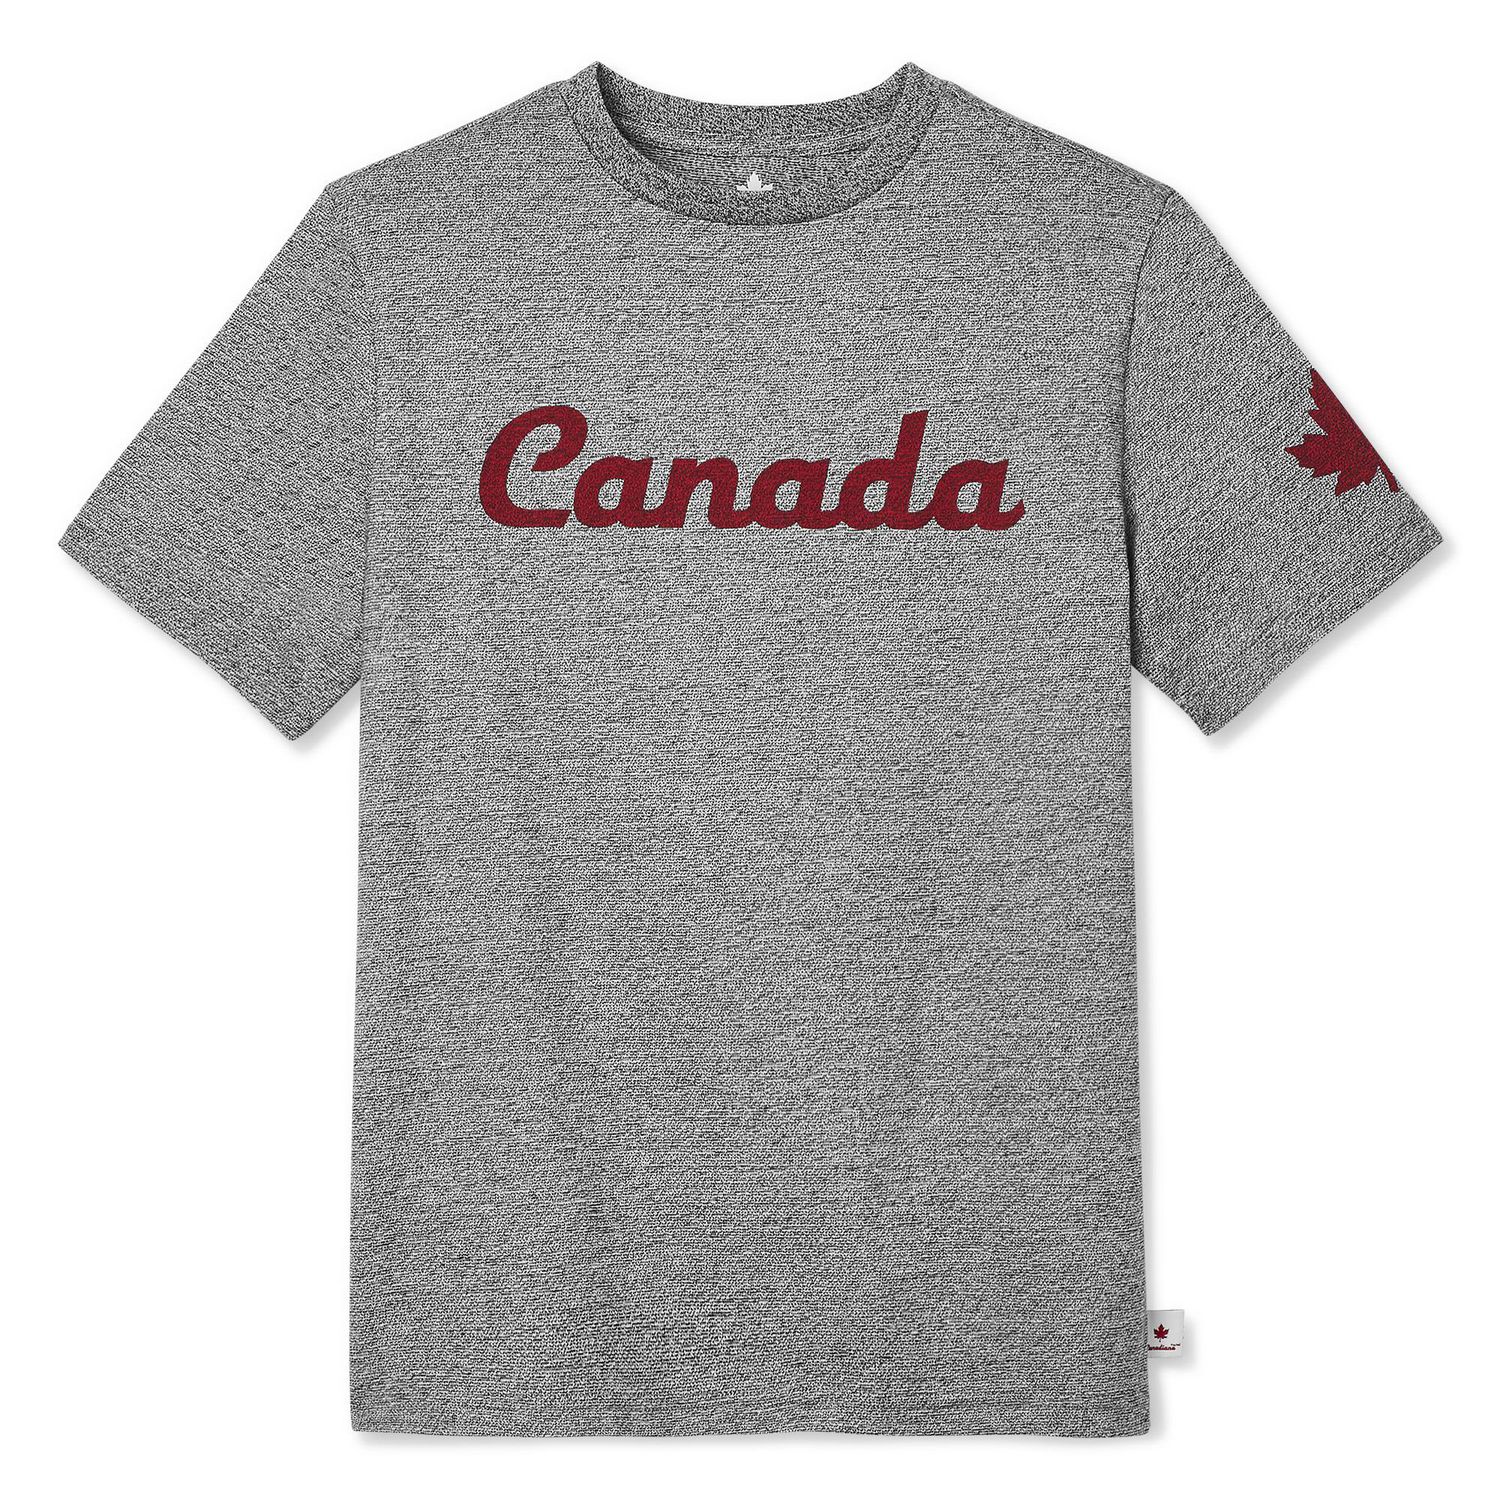 Canada Shirt Roblox Tomwhite2010 Com